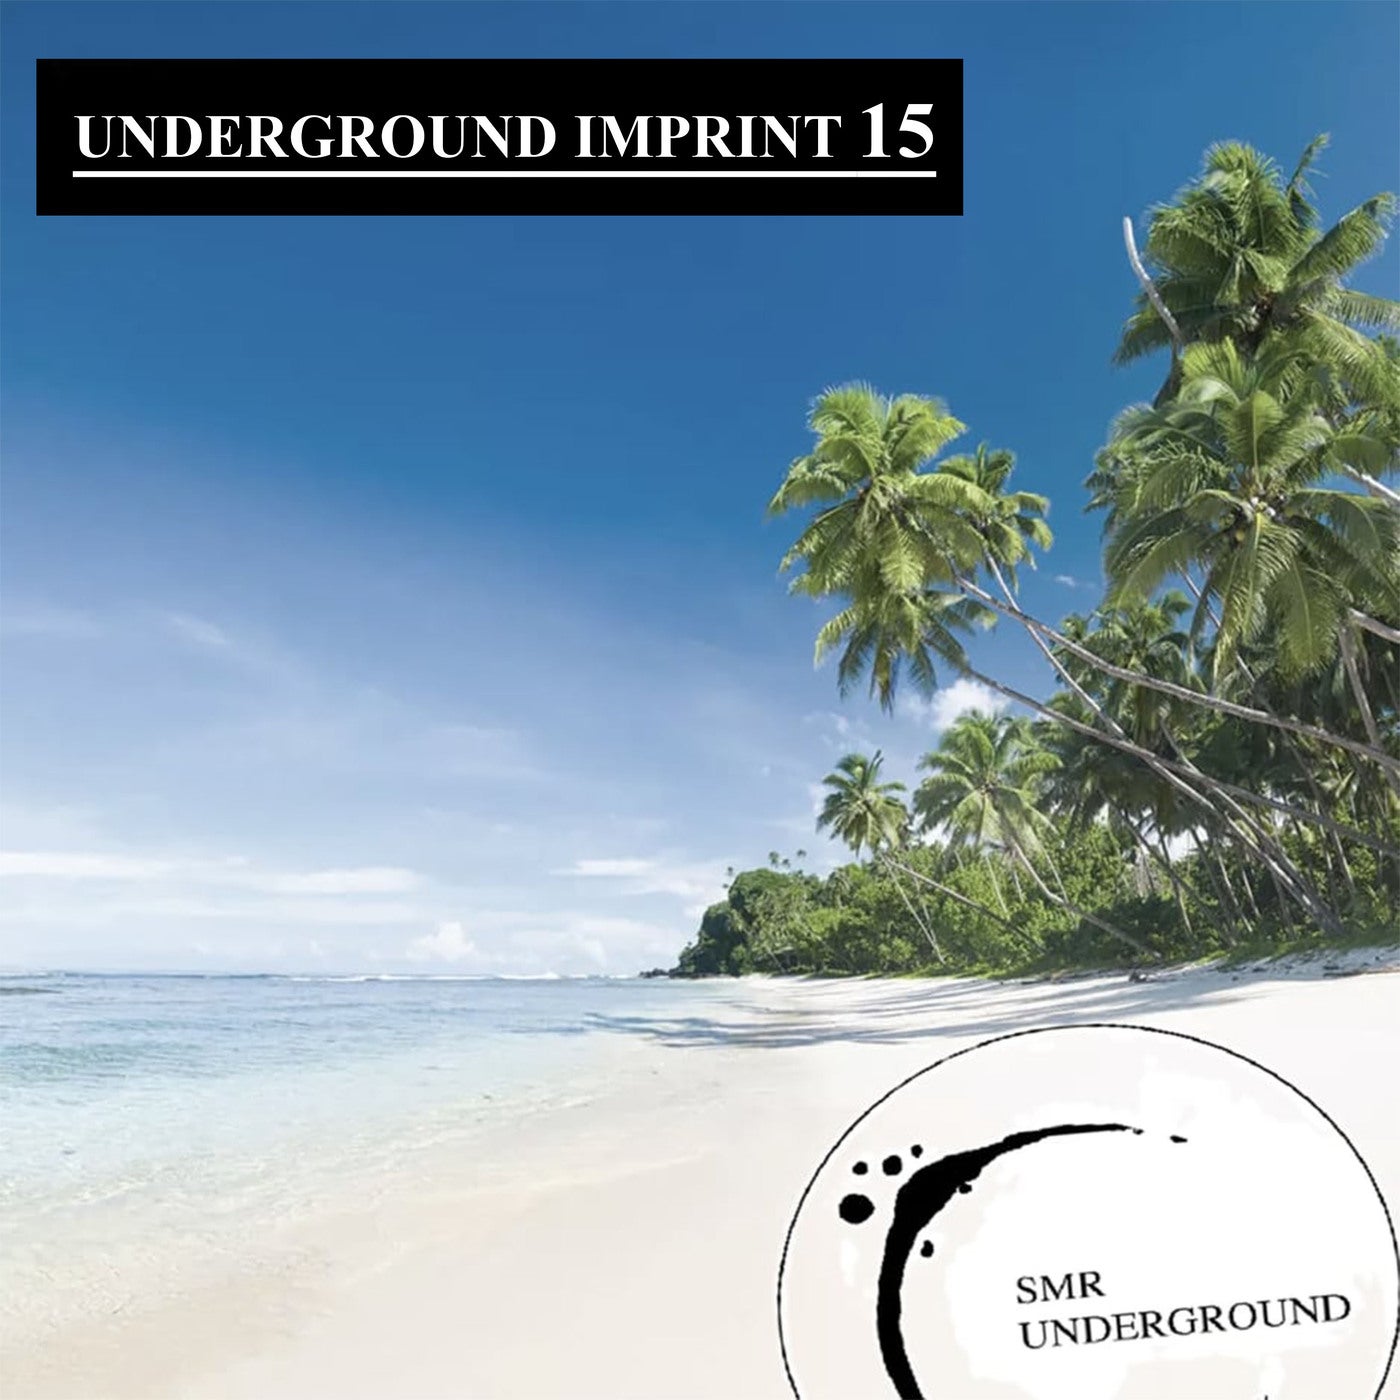 UndergrounD Imprint 15